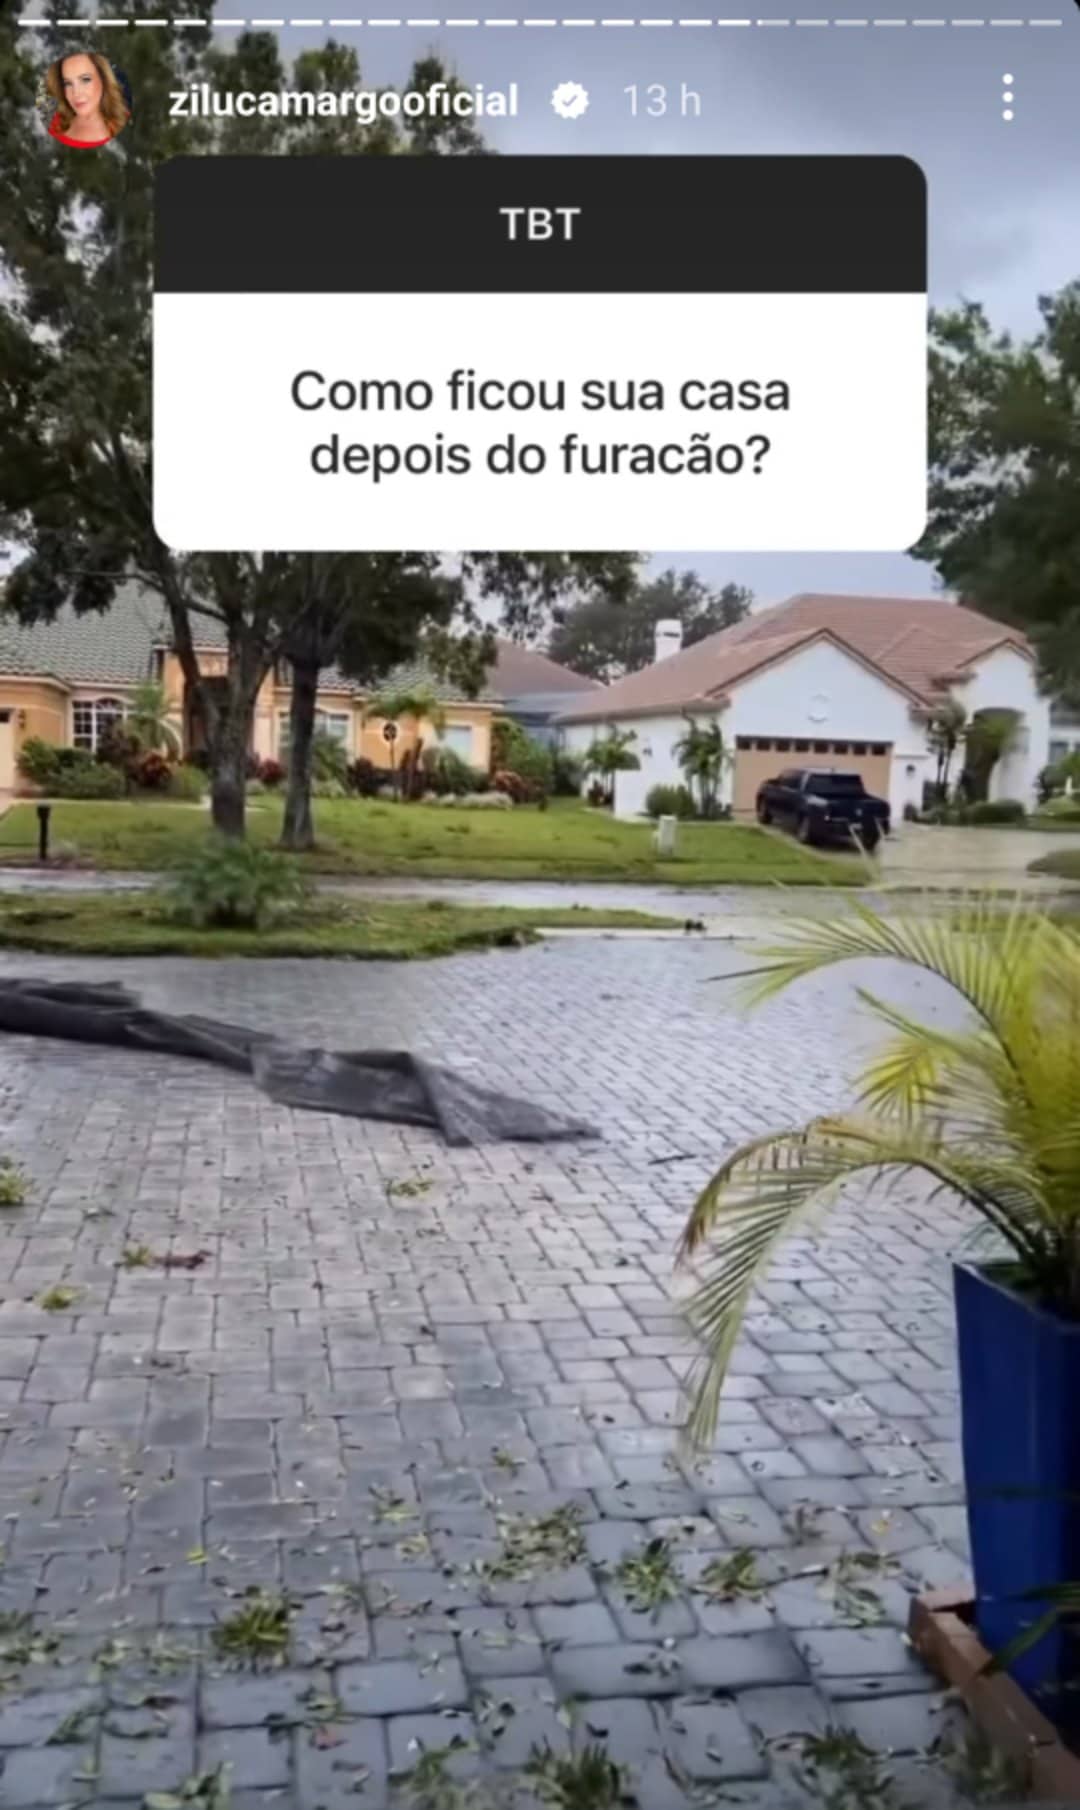 Zilu Camargo fala sobre furacão na Flórida: 'Pouquinho de medo mas